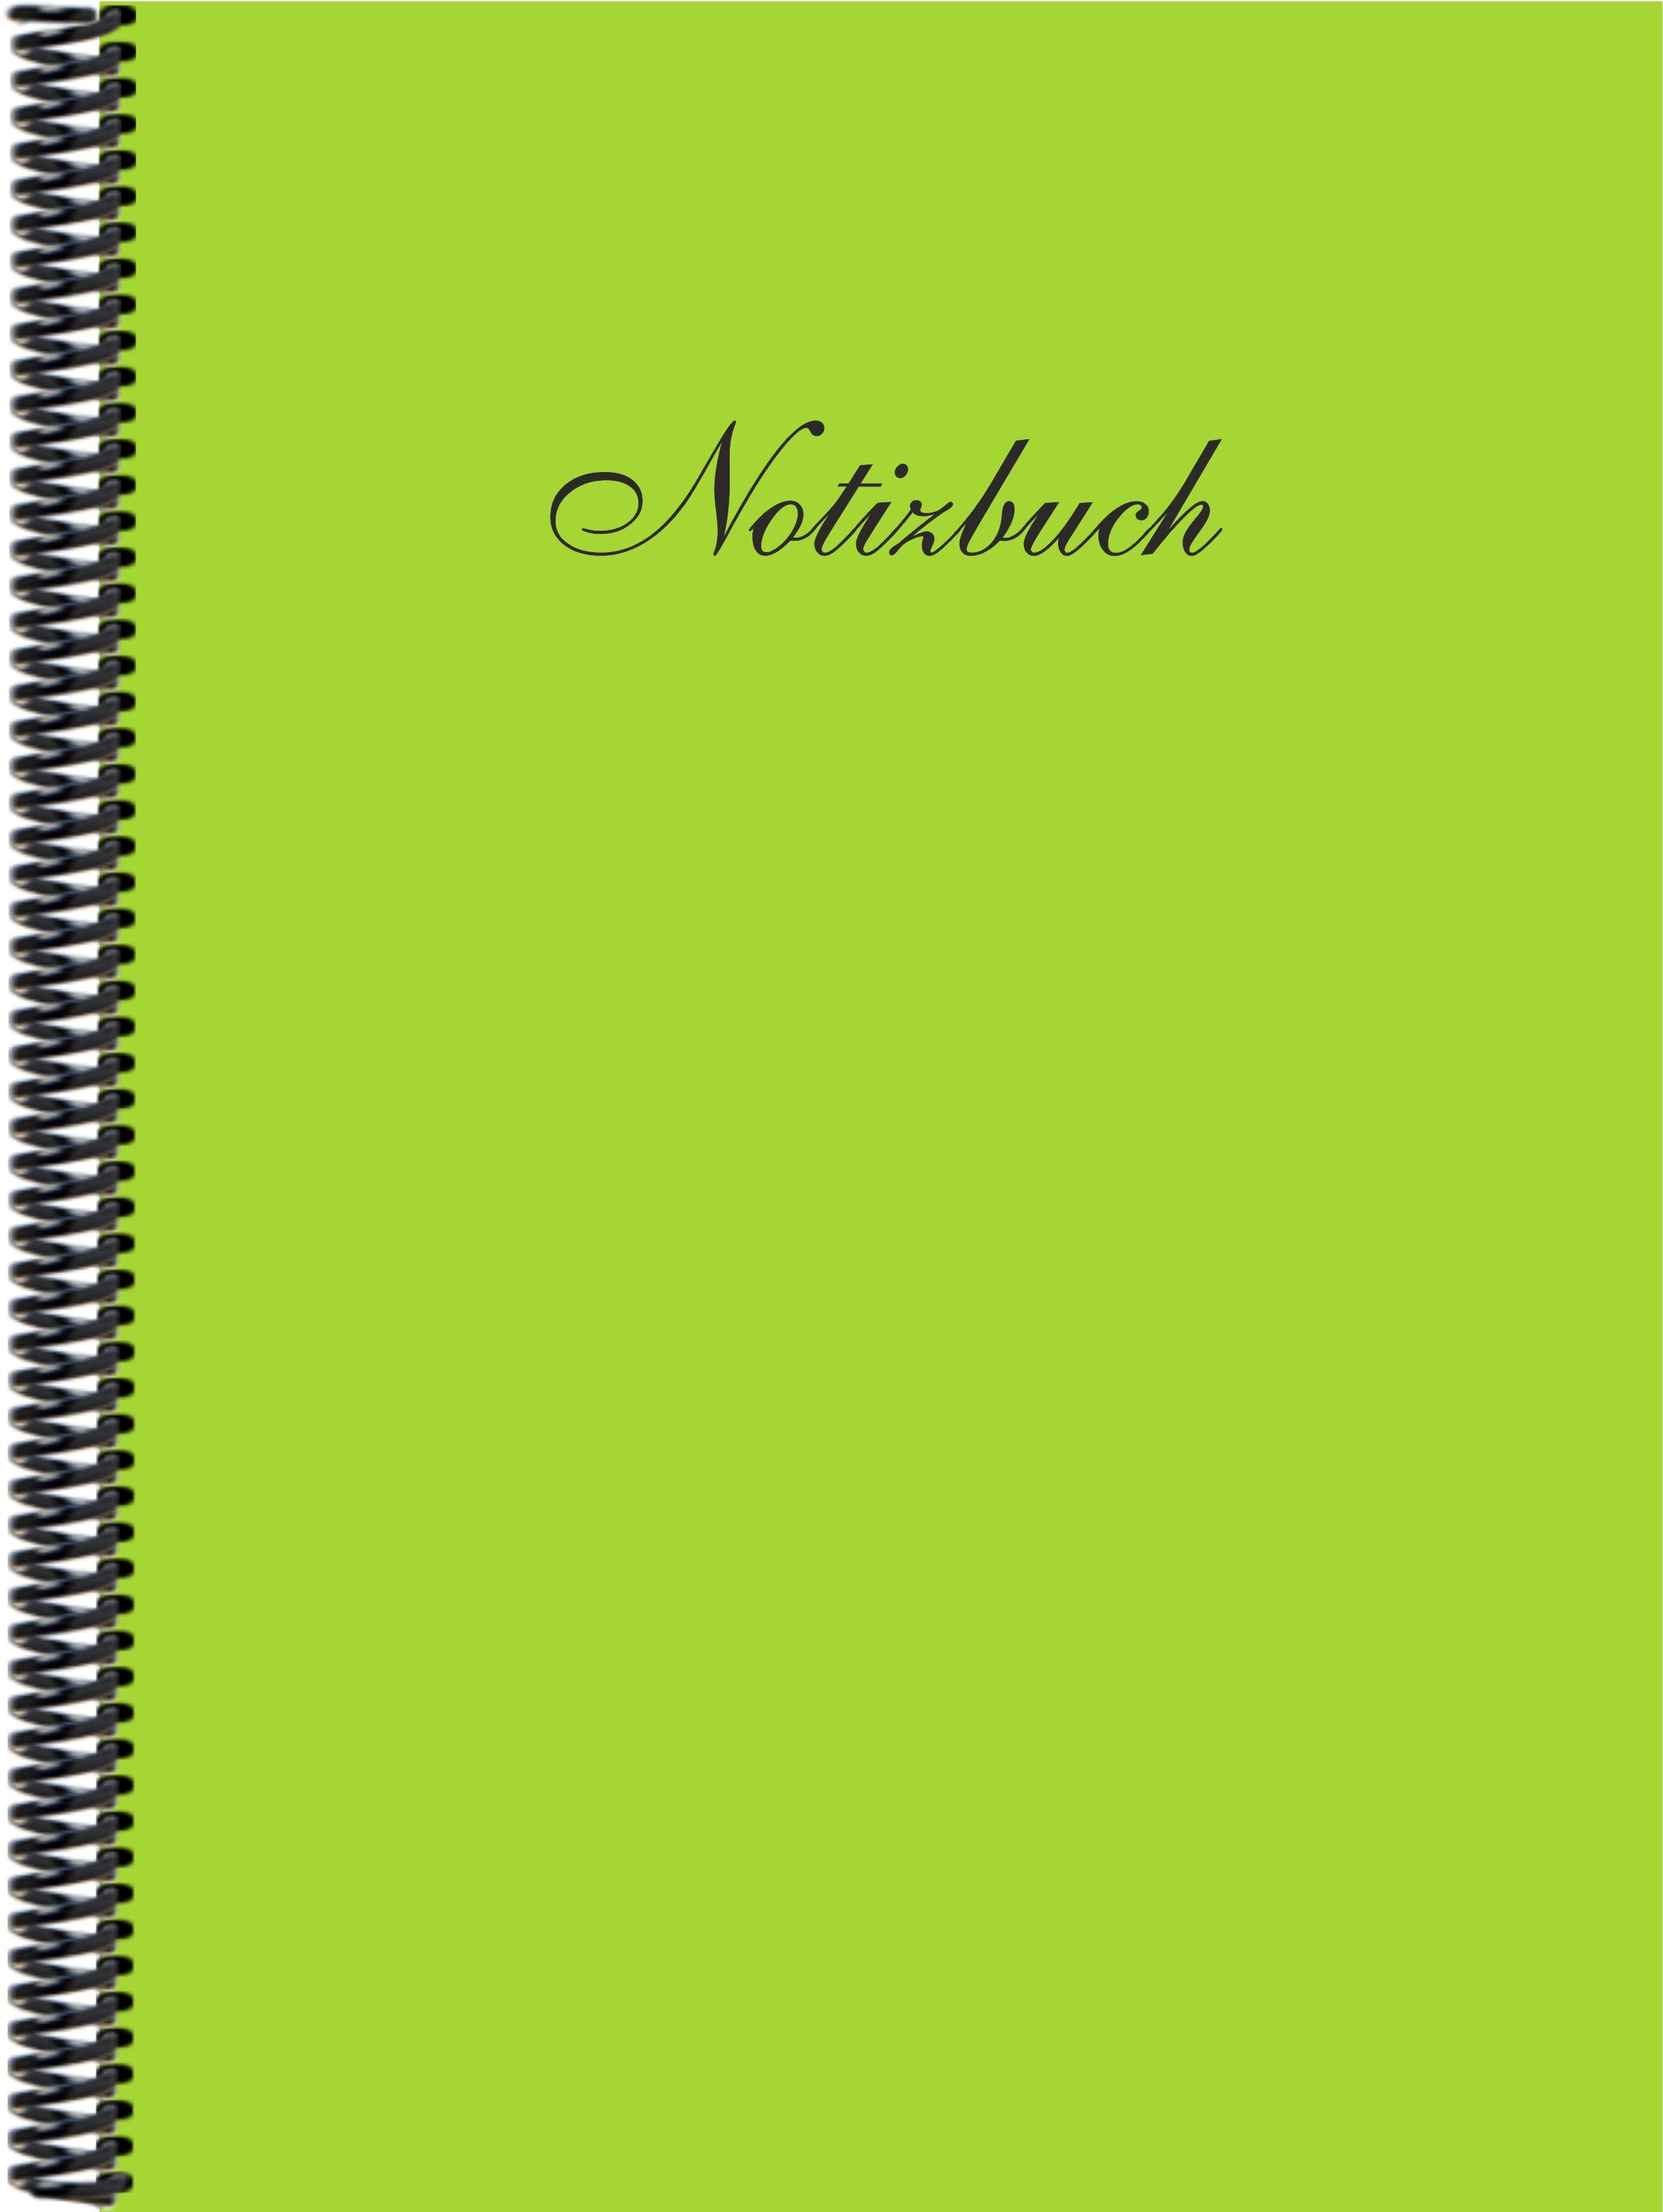 der Gmbh Notizbuch DINA4 Trendfarbe liniert, Verlag in maigrün Notizbuch E&Z